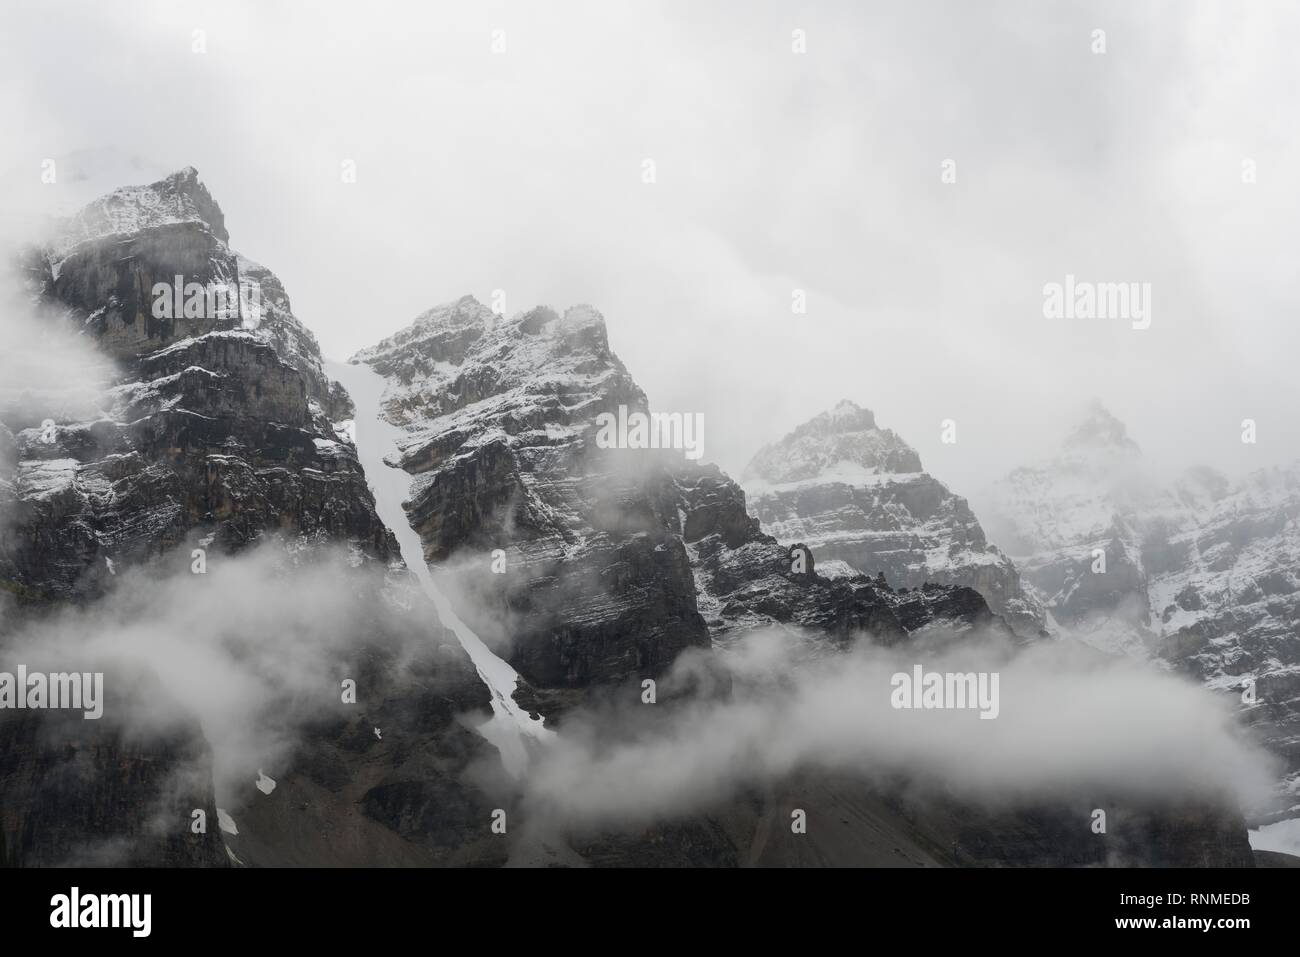 Las escarpadas montañas, rocas cubiertas de nubes, el Valle de los Diez Picos, Montañas Rocosas, el Parque Nacional Banff, provincia de Alberta, Canadá, Norte Ameri Foto de stock